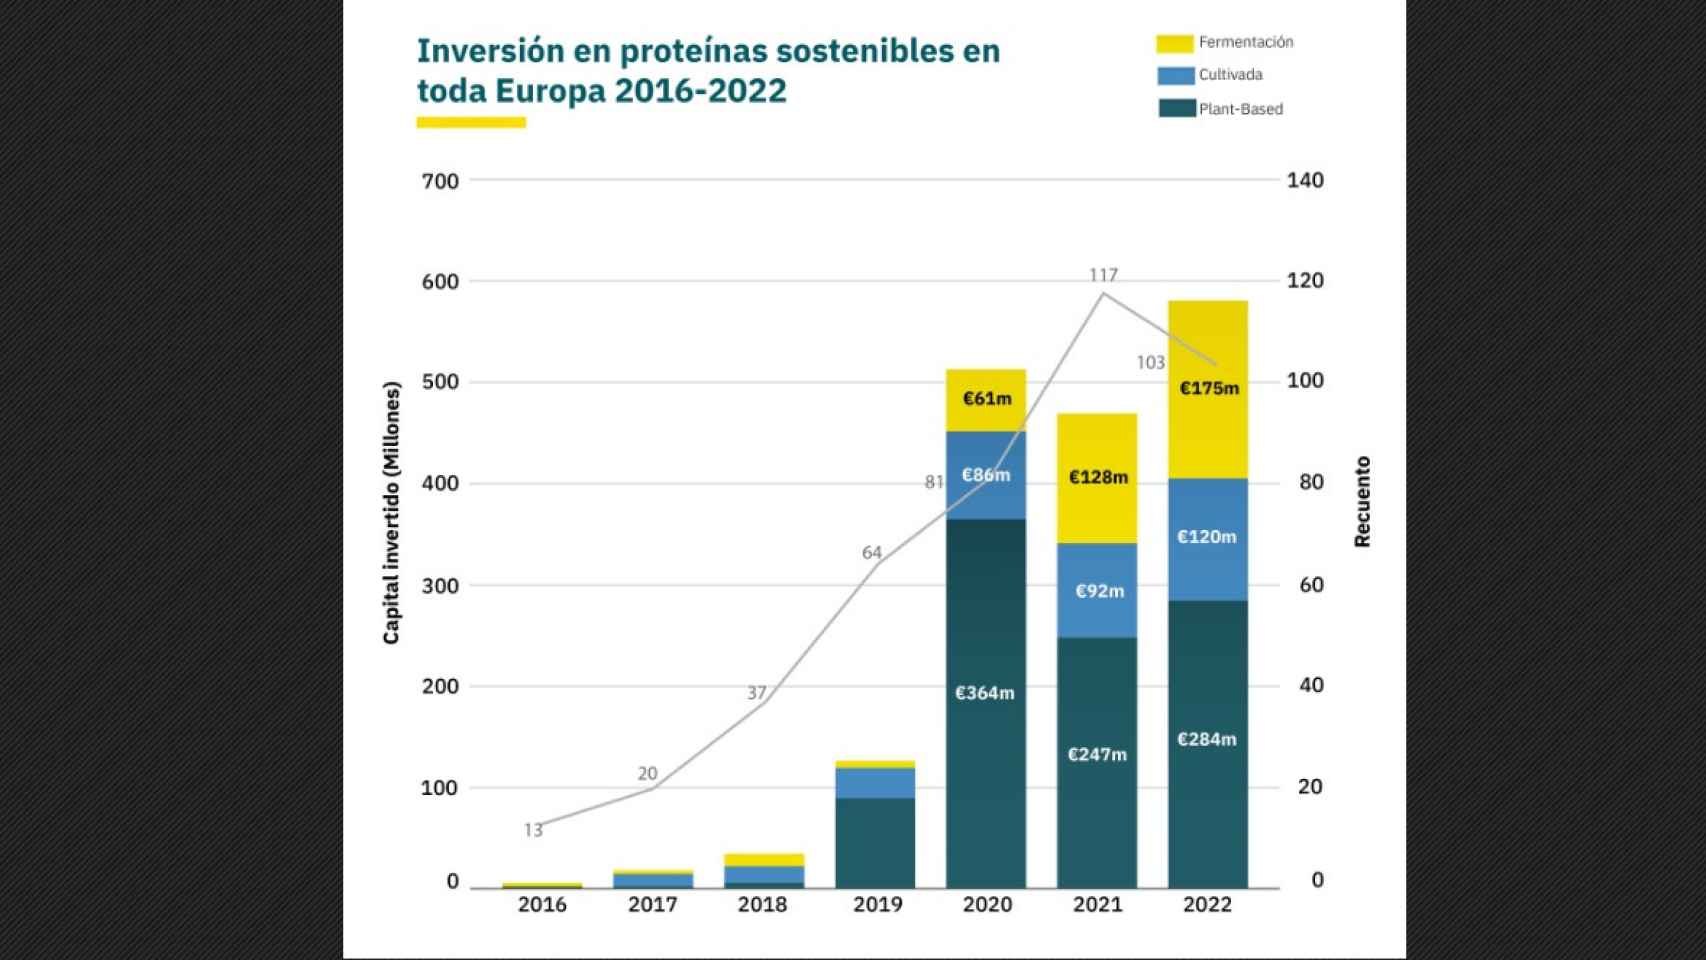 Inversión en startups de proteínas sostenibles en el conjunto de Europa.